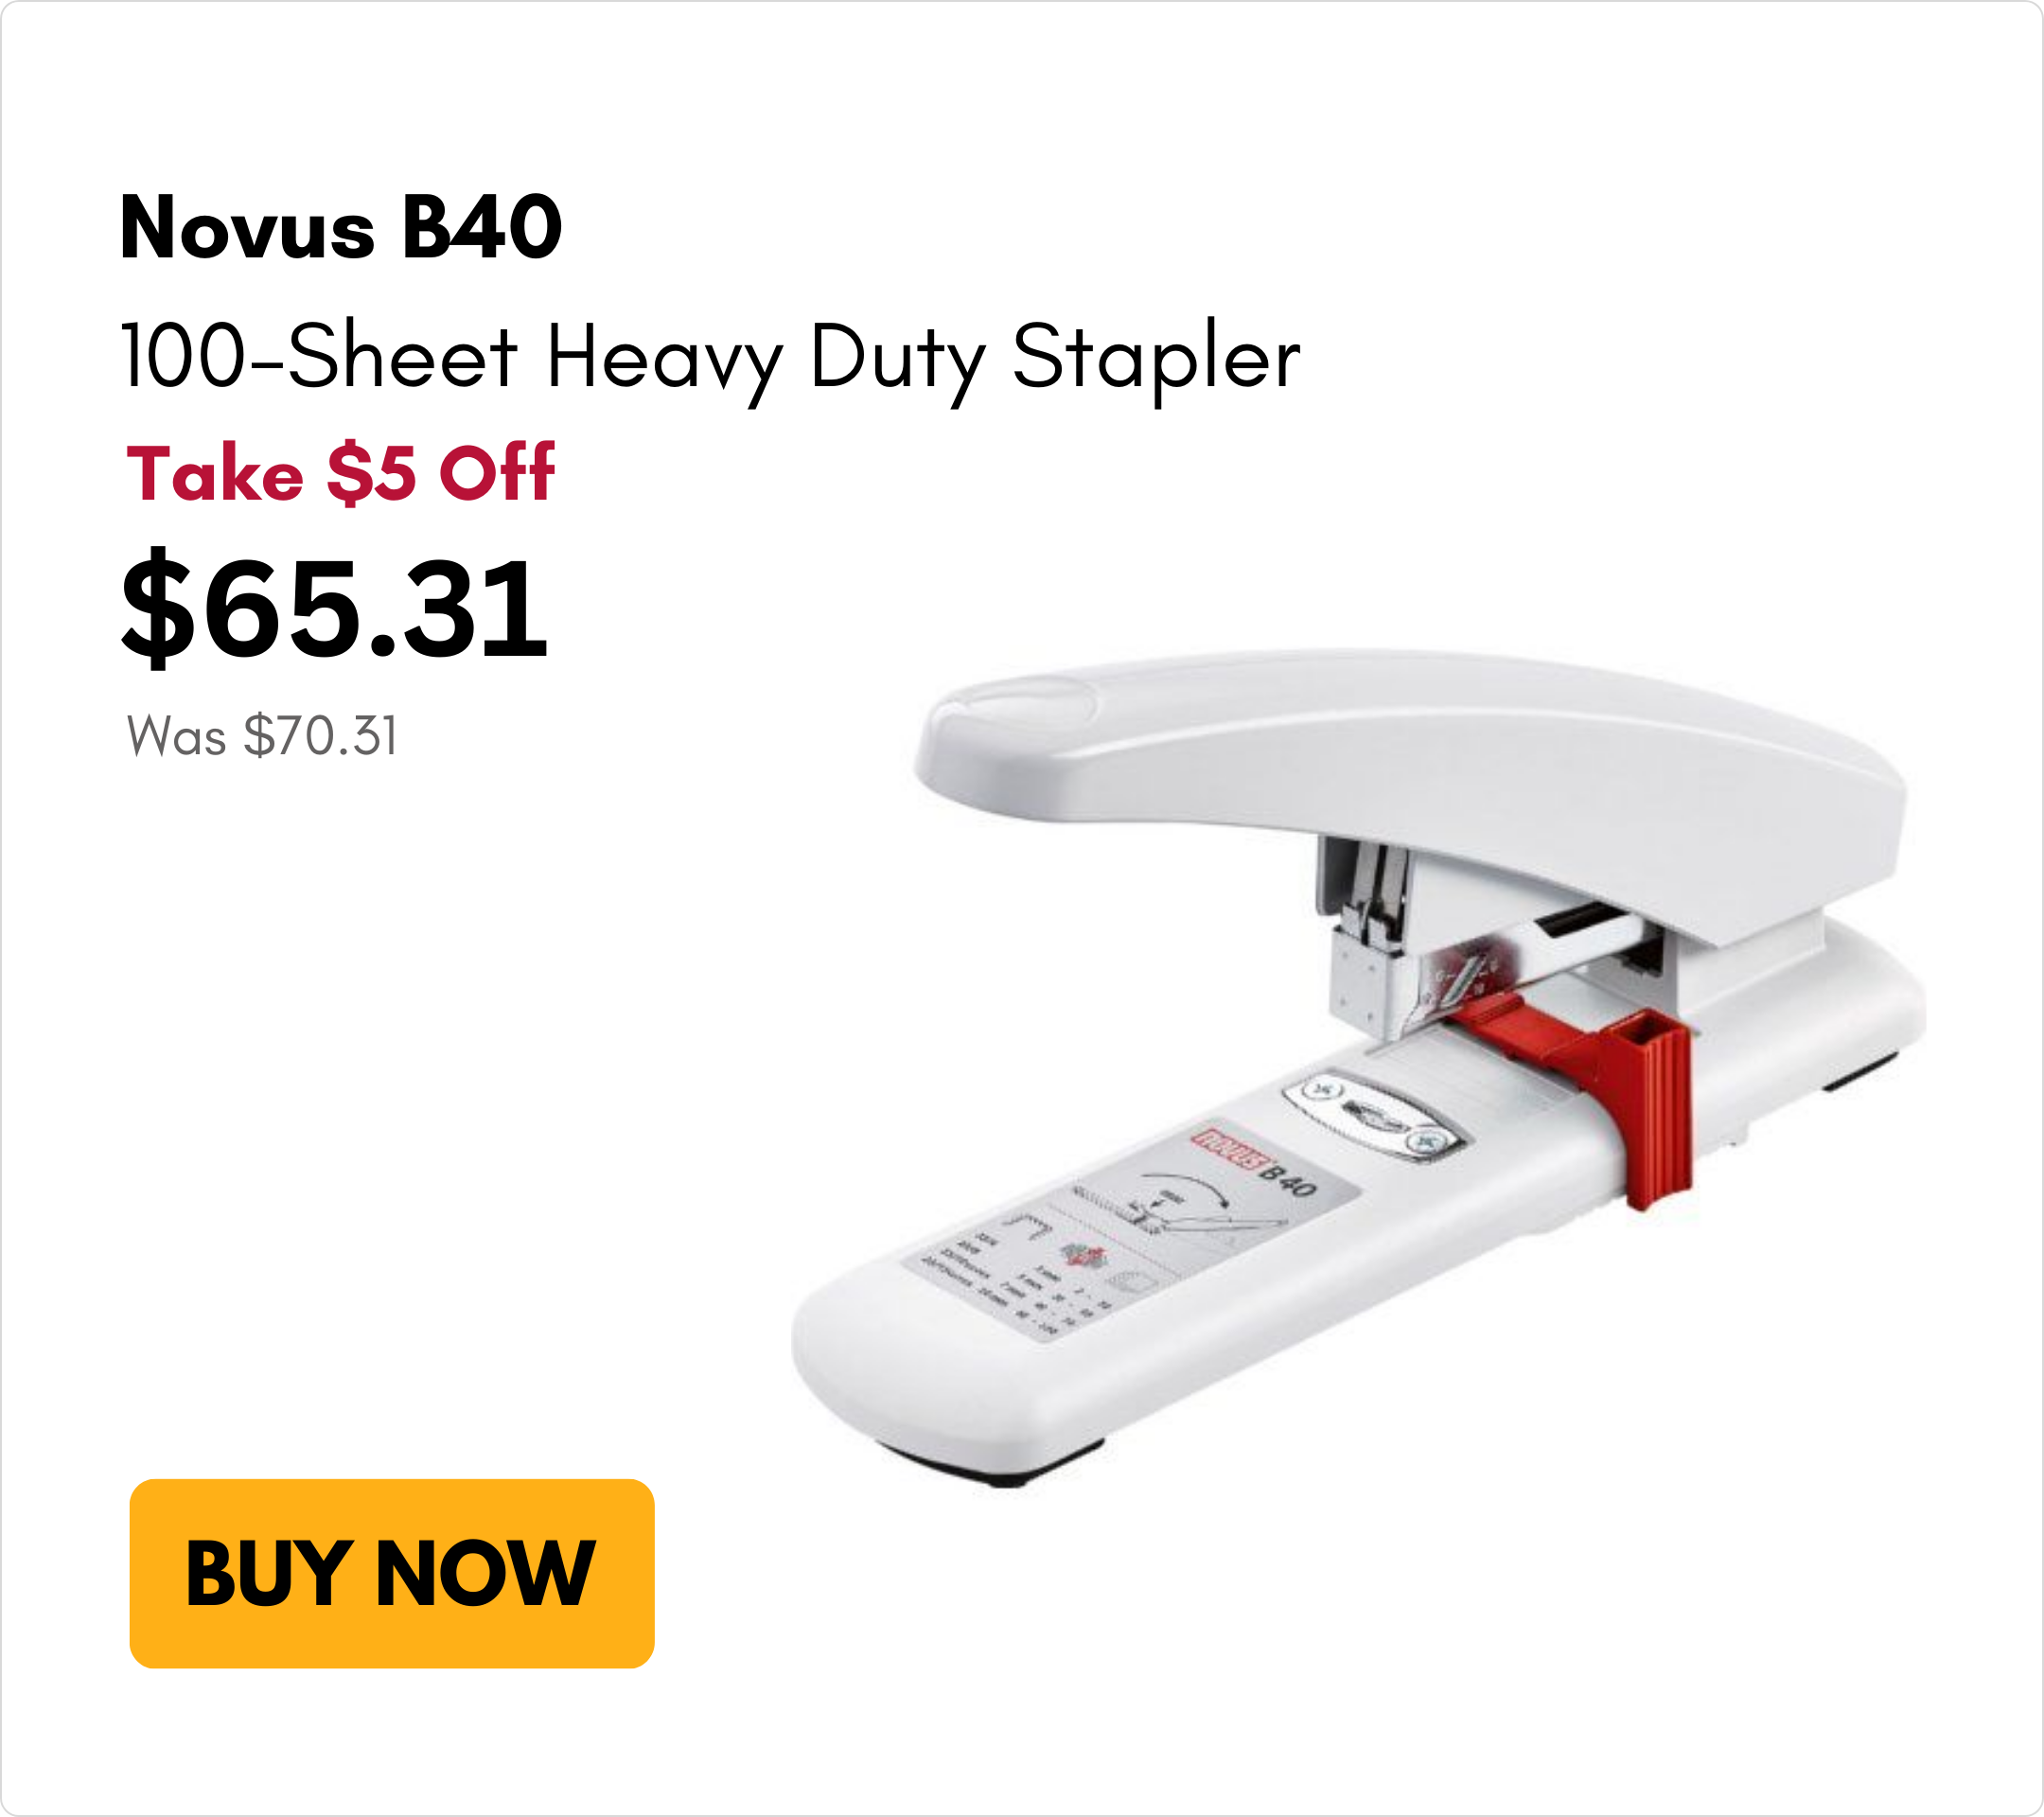 Novus B40 100-Sheet Heavy Duty Stapler on Sale for $5 off on MyBinding.com